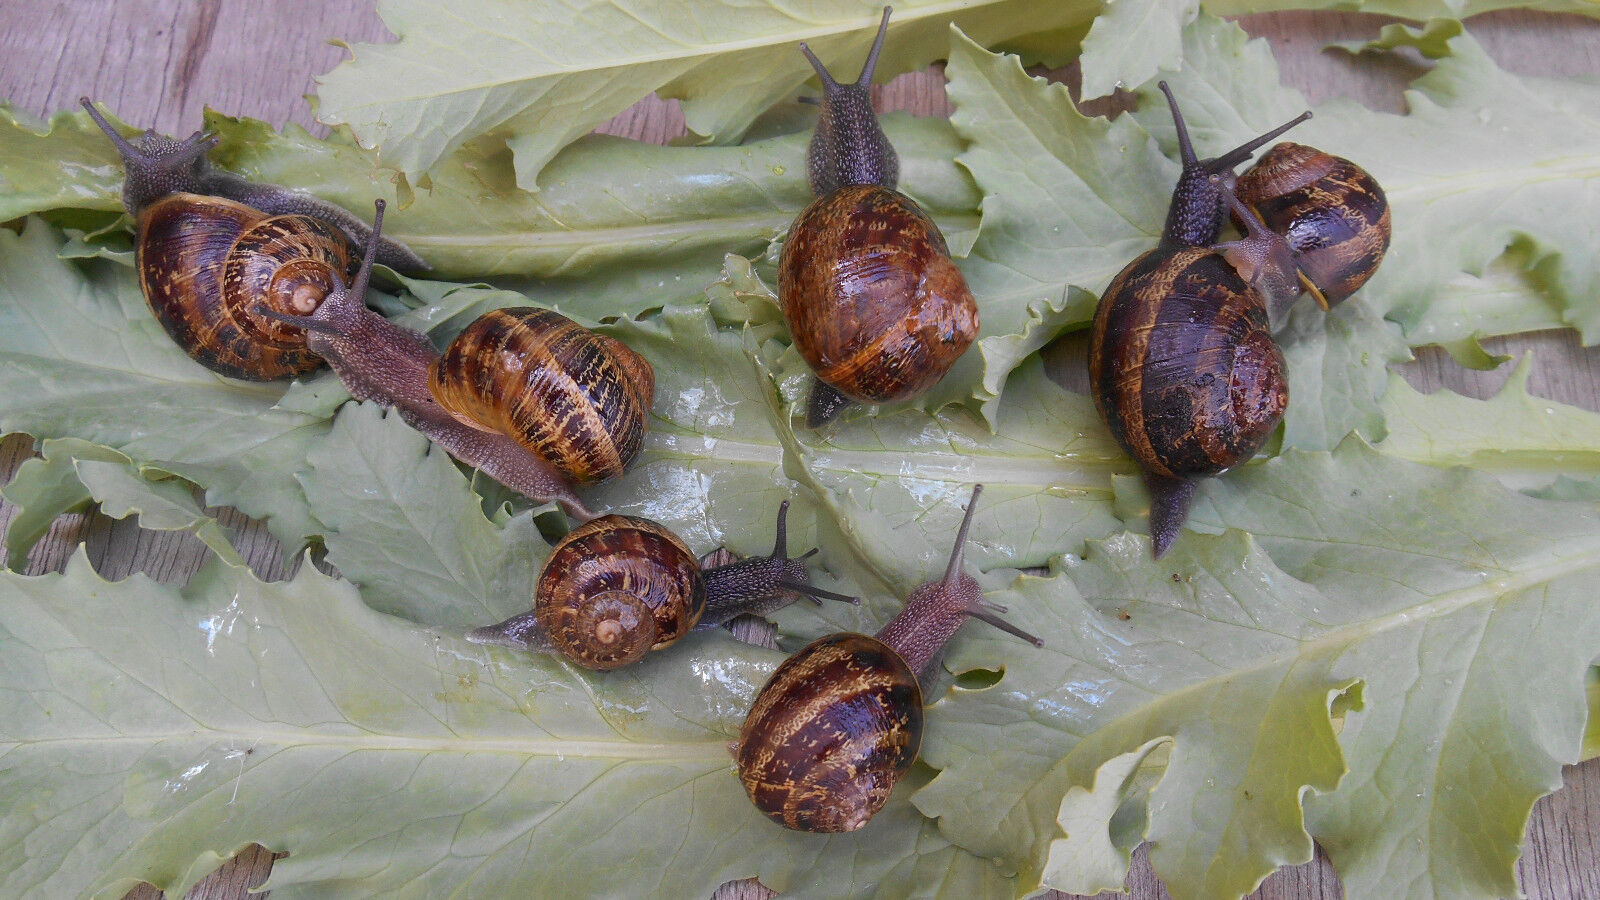 TWO (2) Live Pet Land Snails Hand Raised Pet, educational